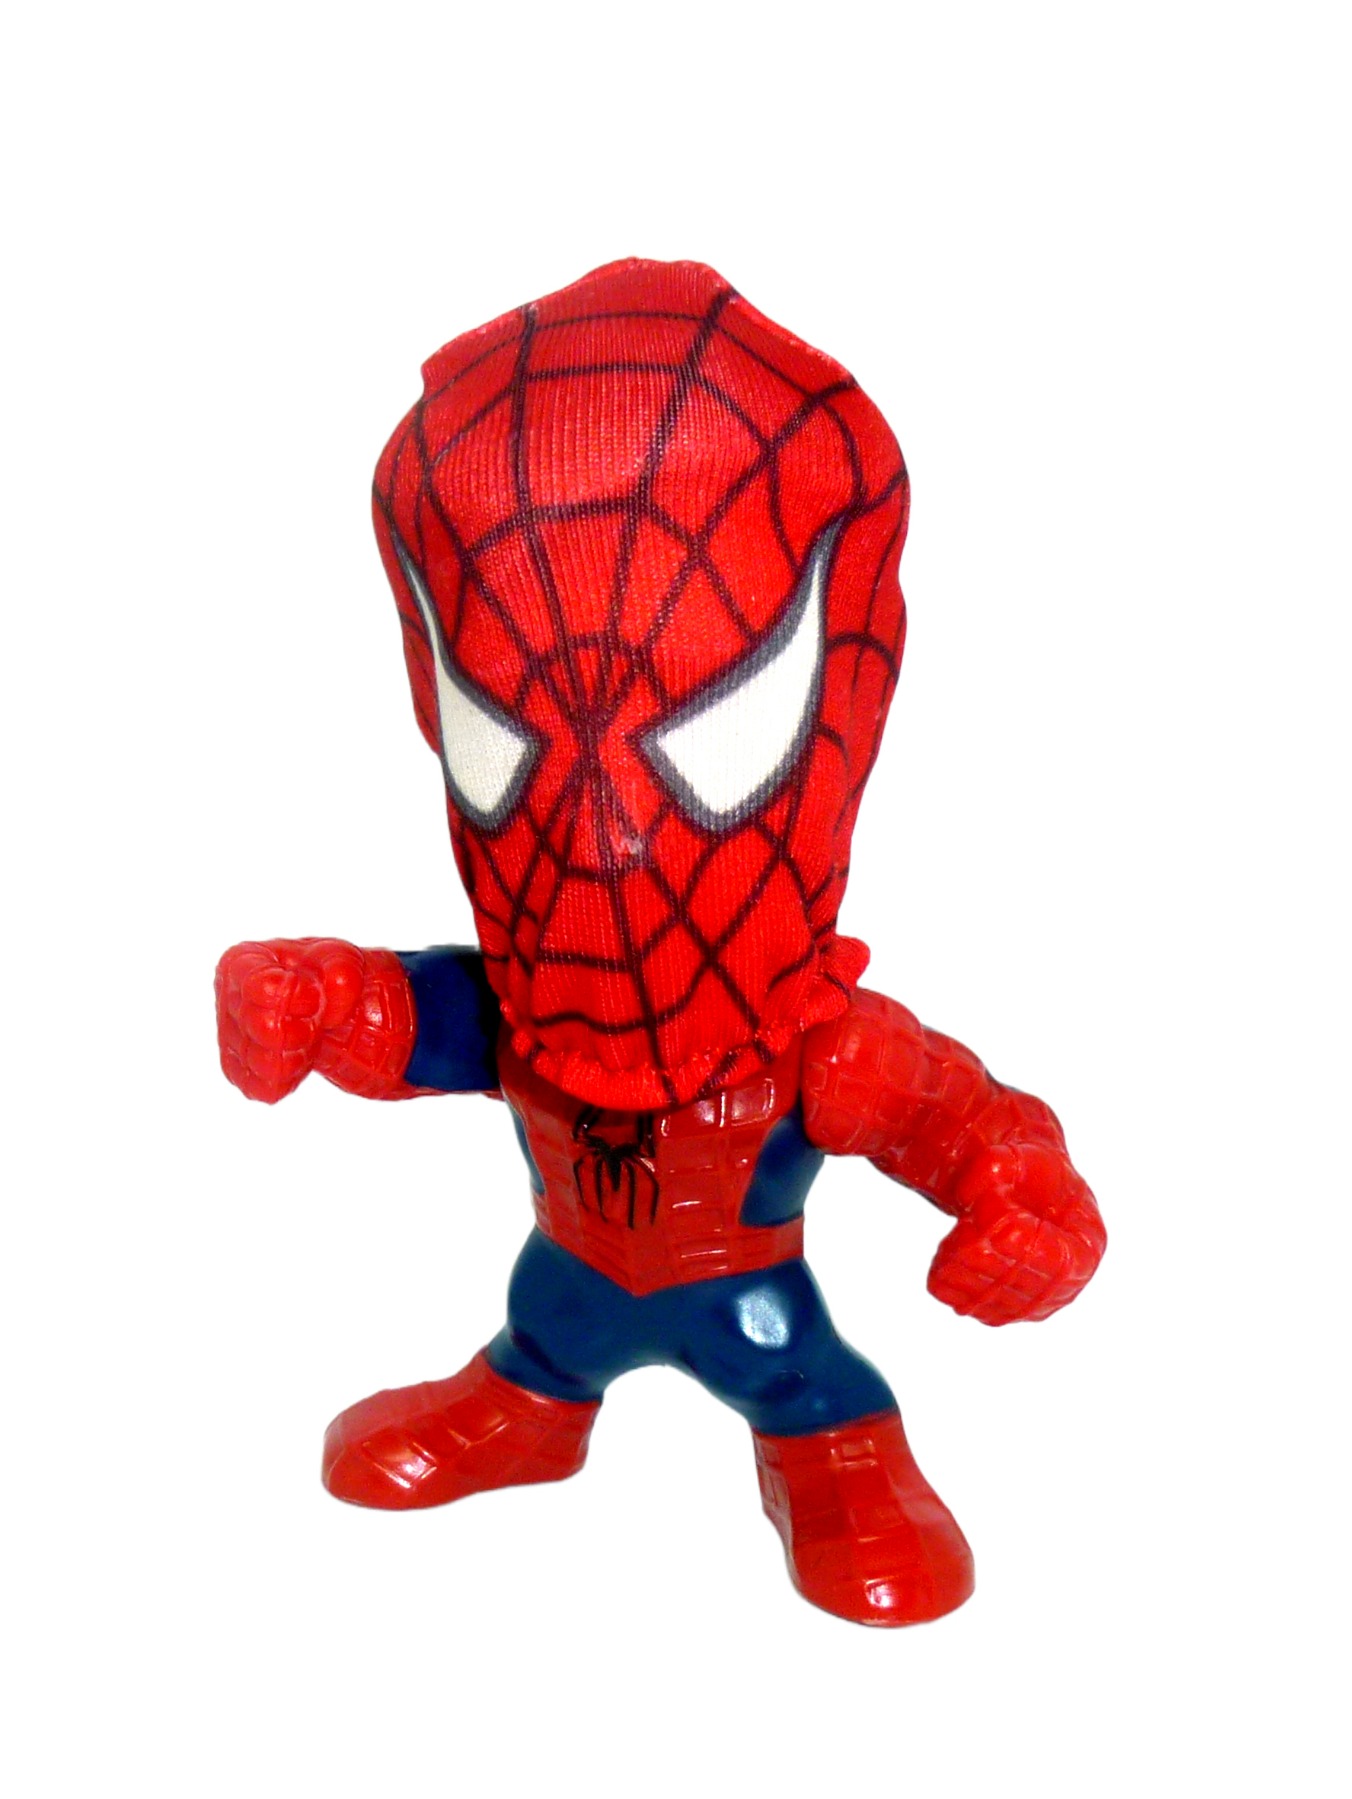 Spider-Man 3 Movie Figure Burger King 2006 2